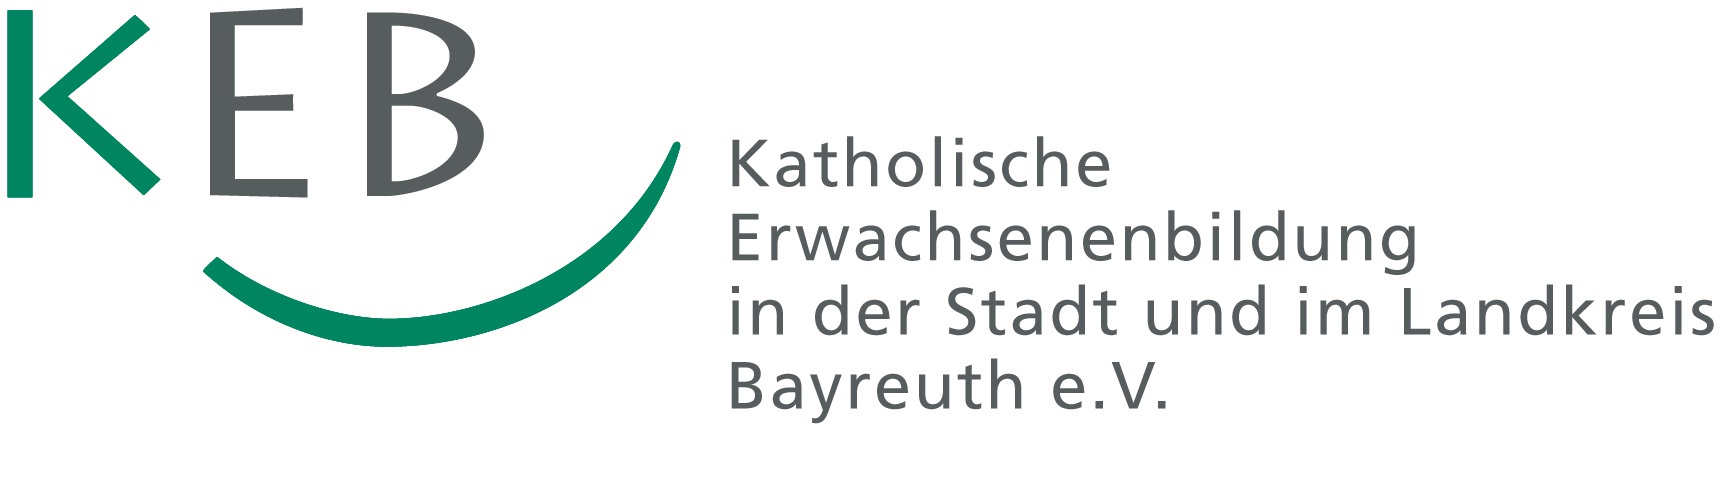 keb bayreuth logo